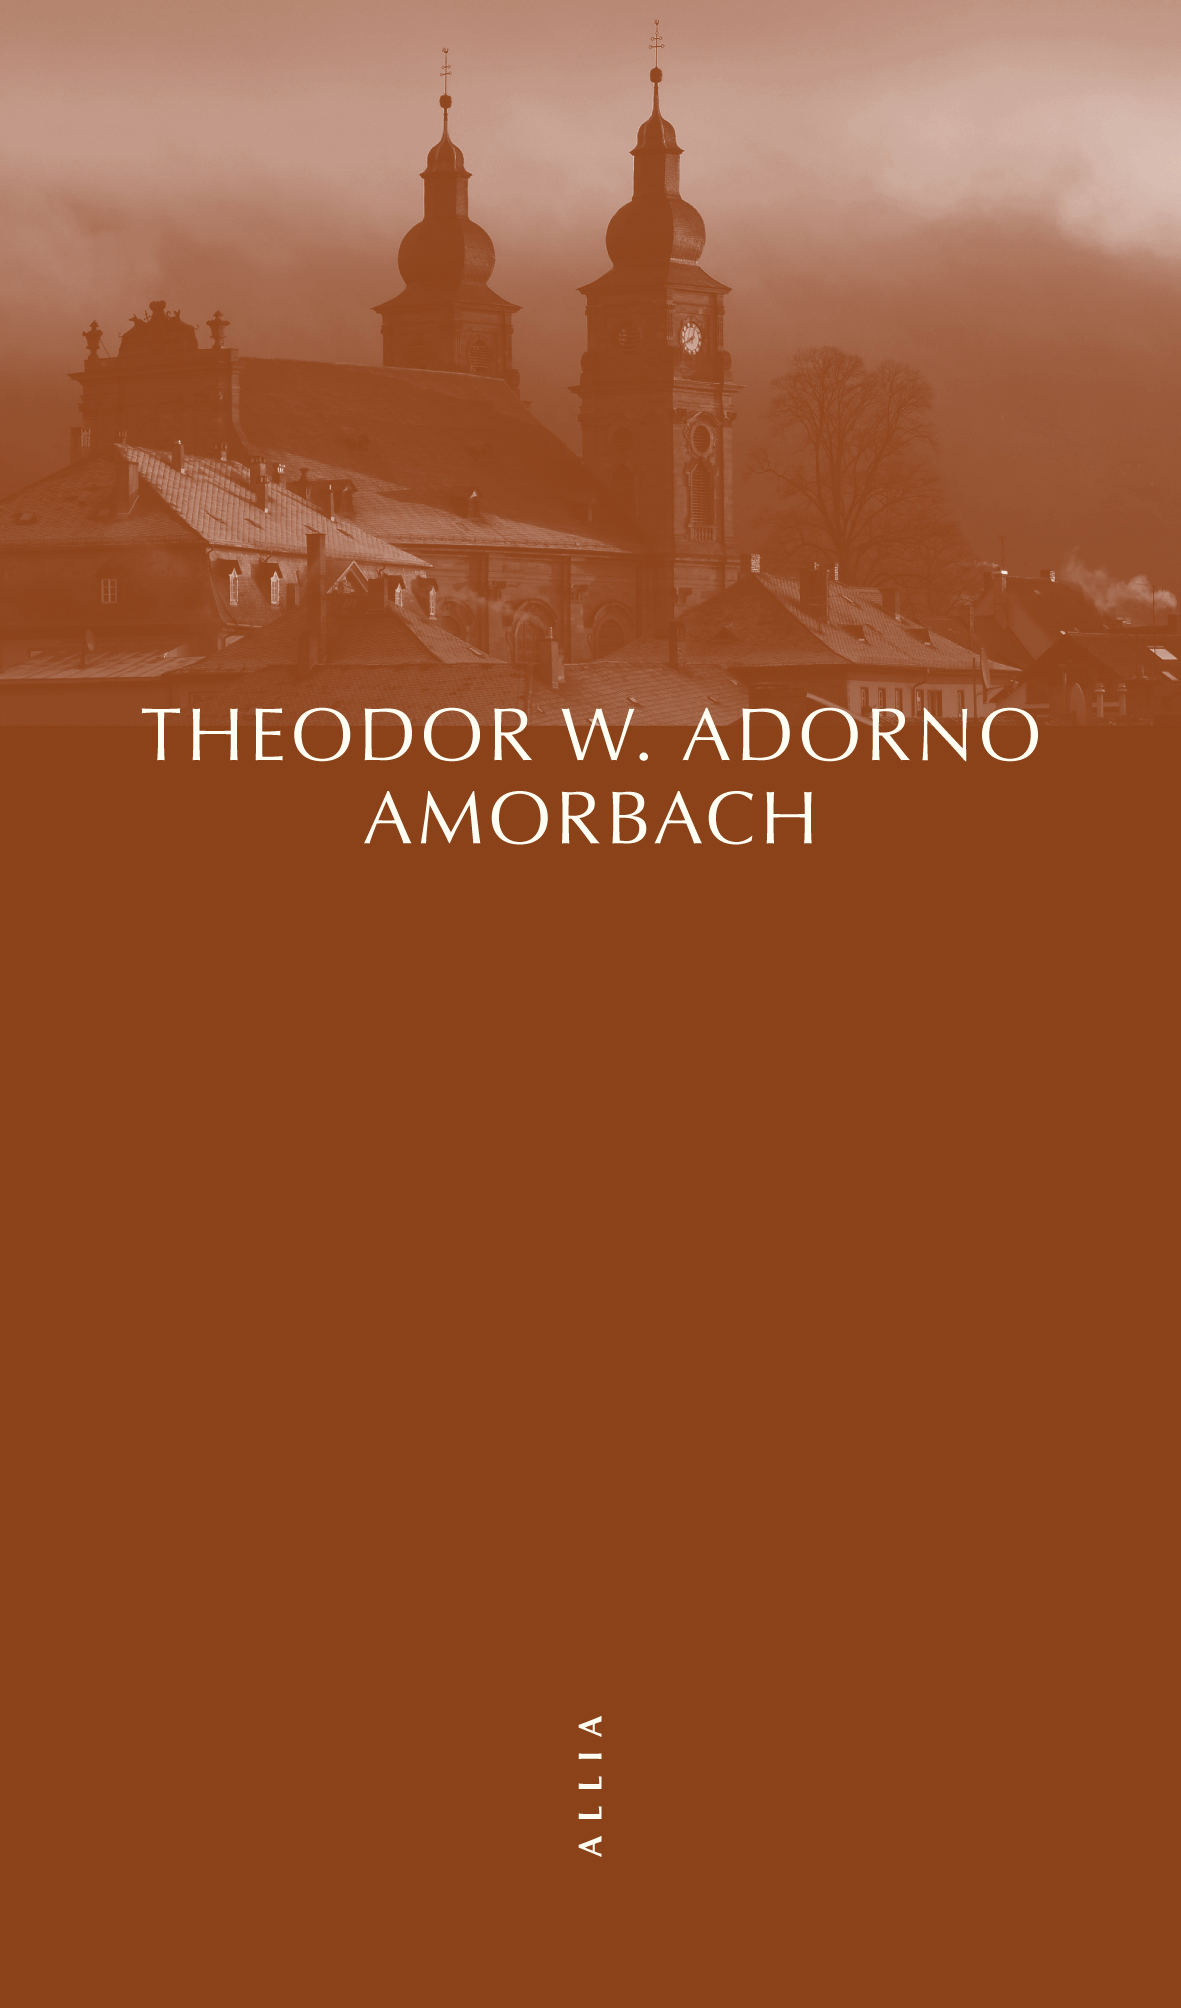 Amorbach